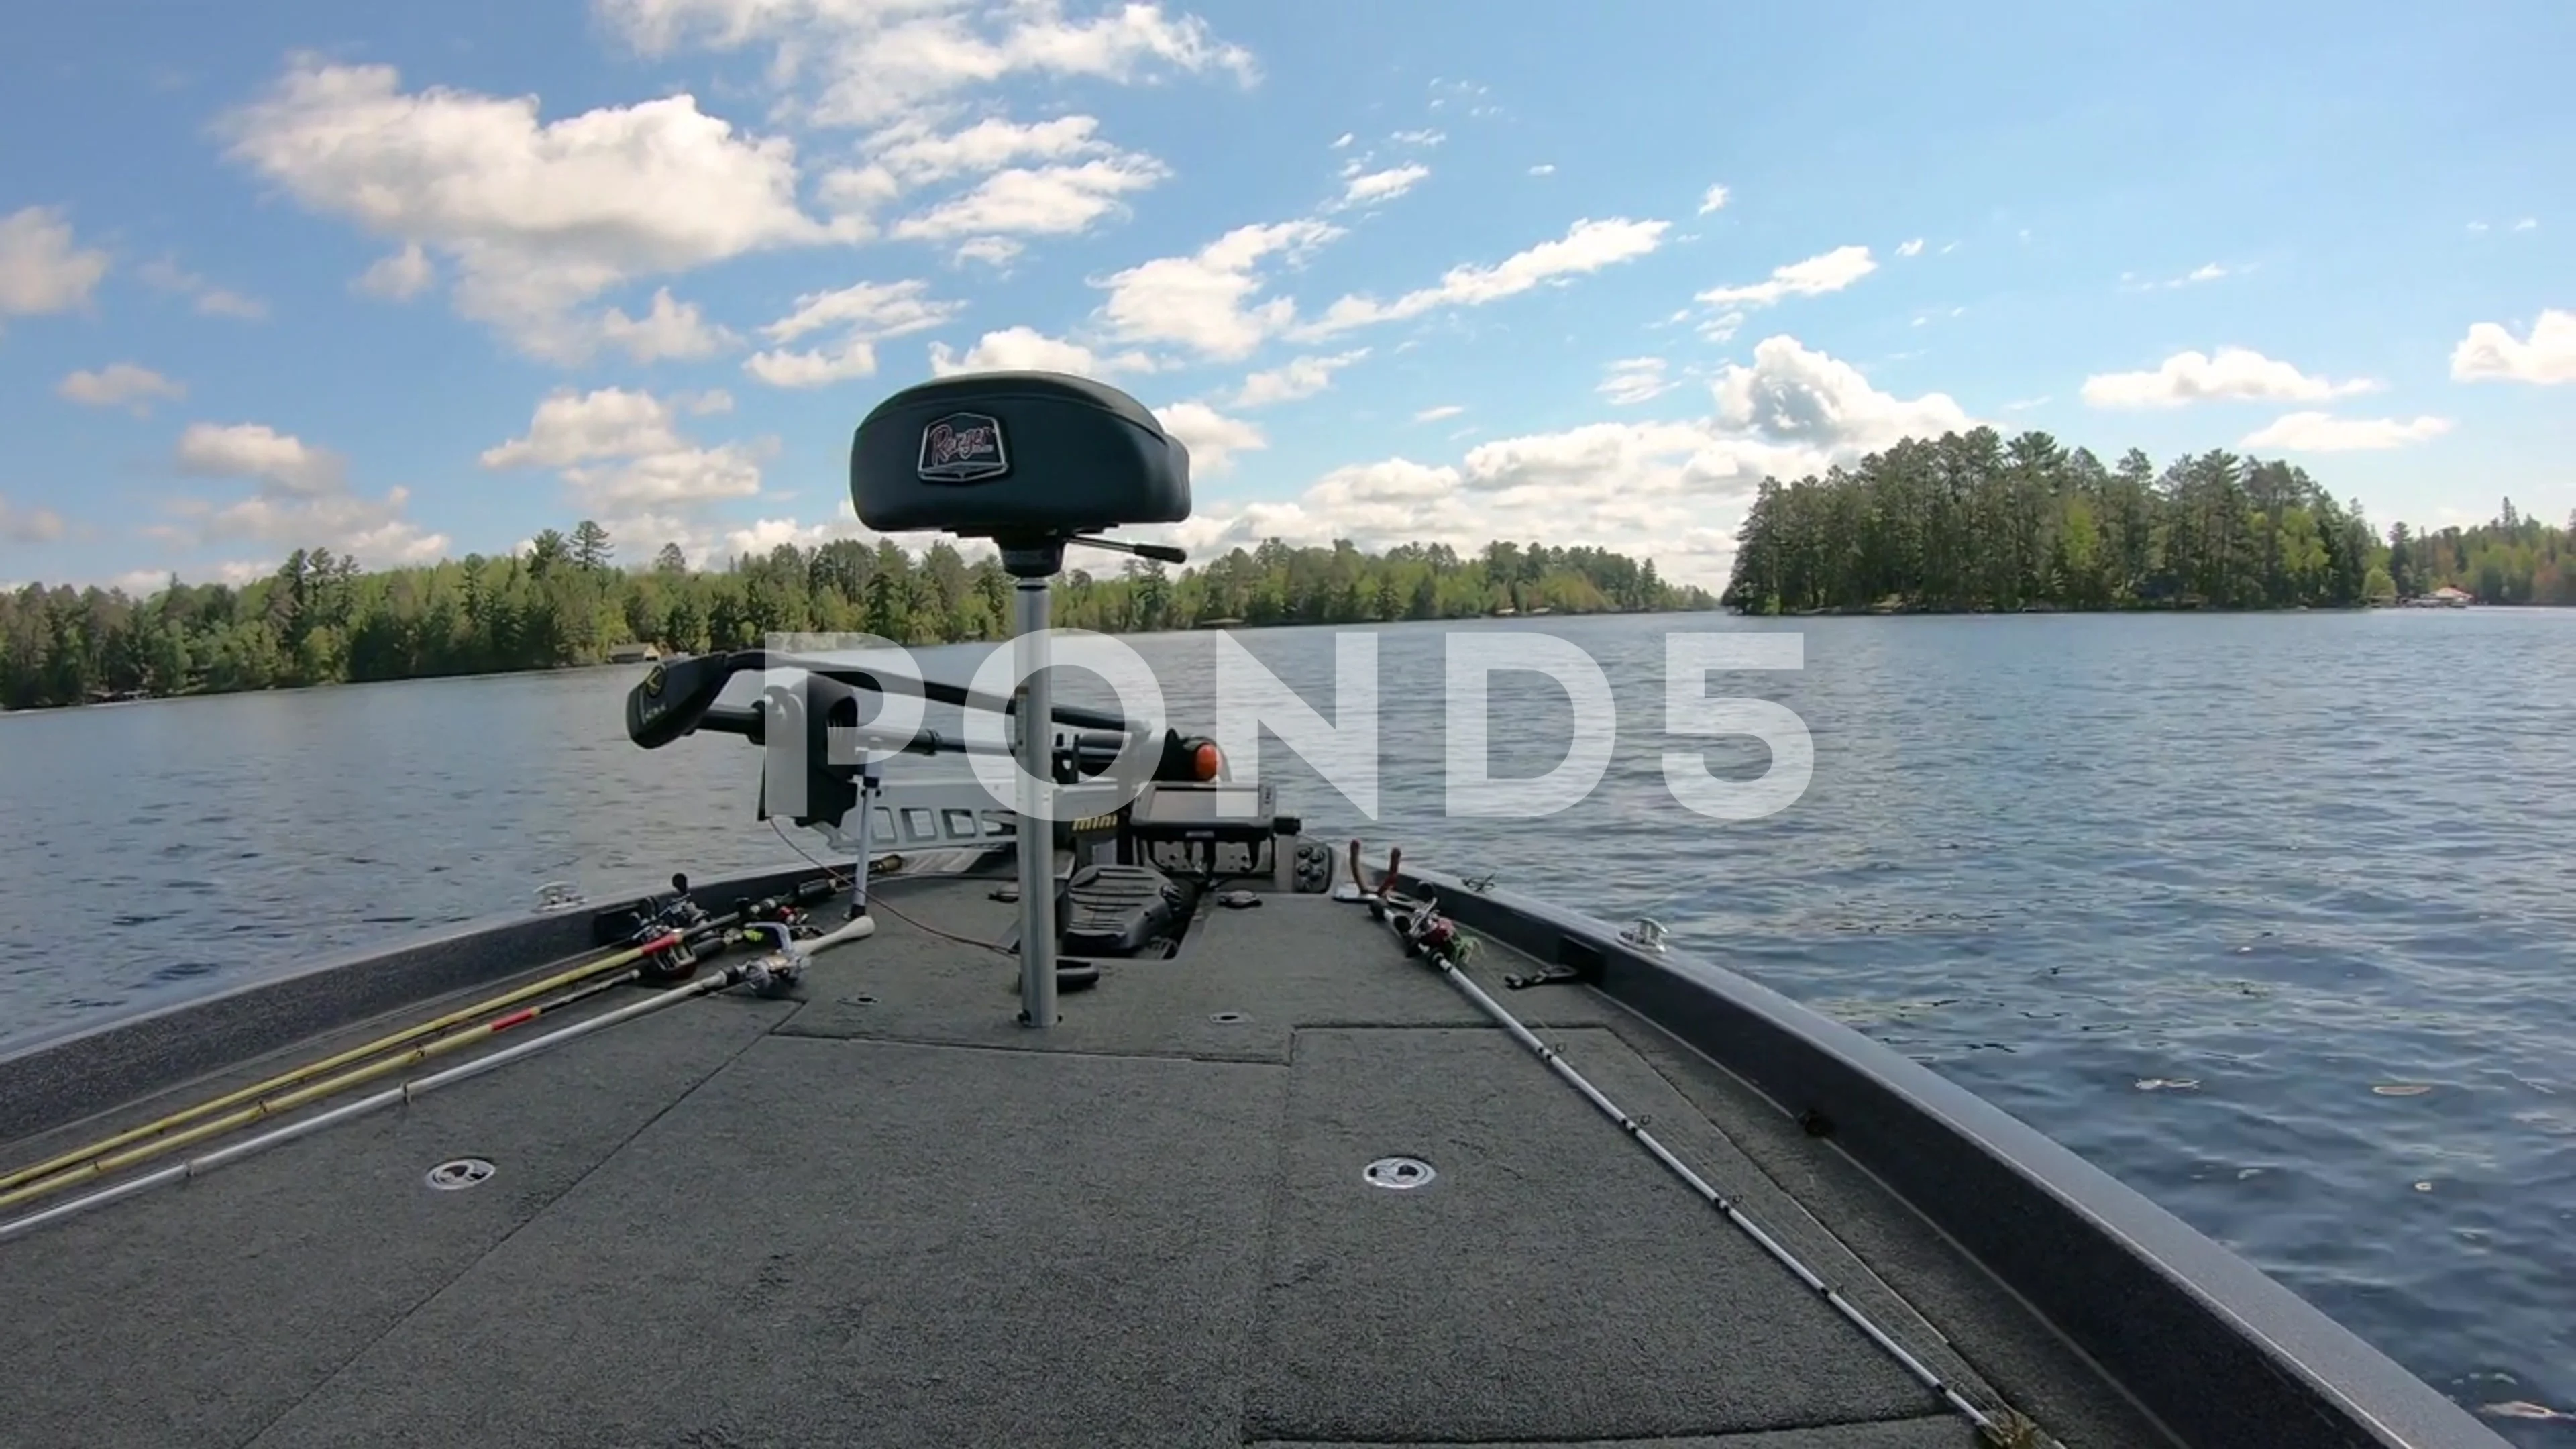 https://images.pond5.com/front-deck-bass-fishing-boat-footage-200053358_prevstill.jpeg